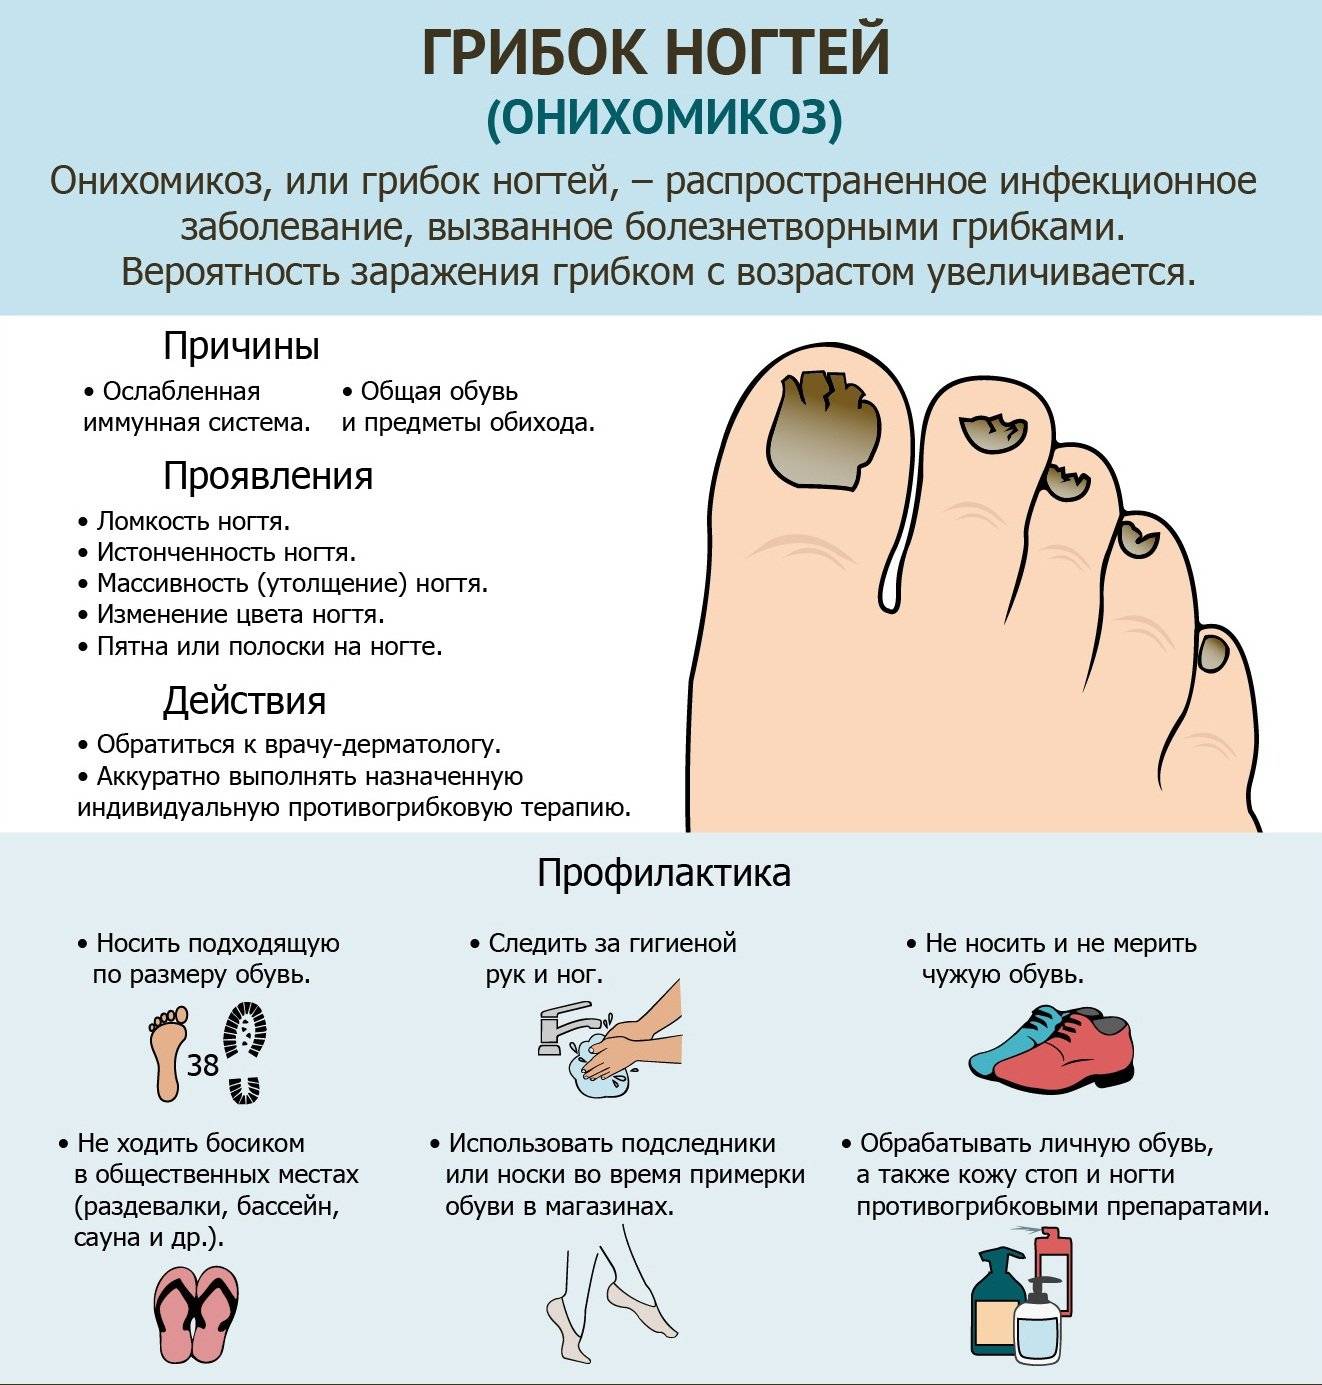 Полезная справка для пациентов: симптомы грибка ногтей на ногах